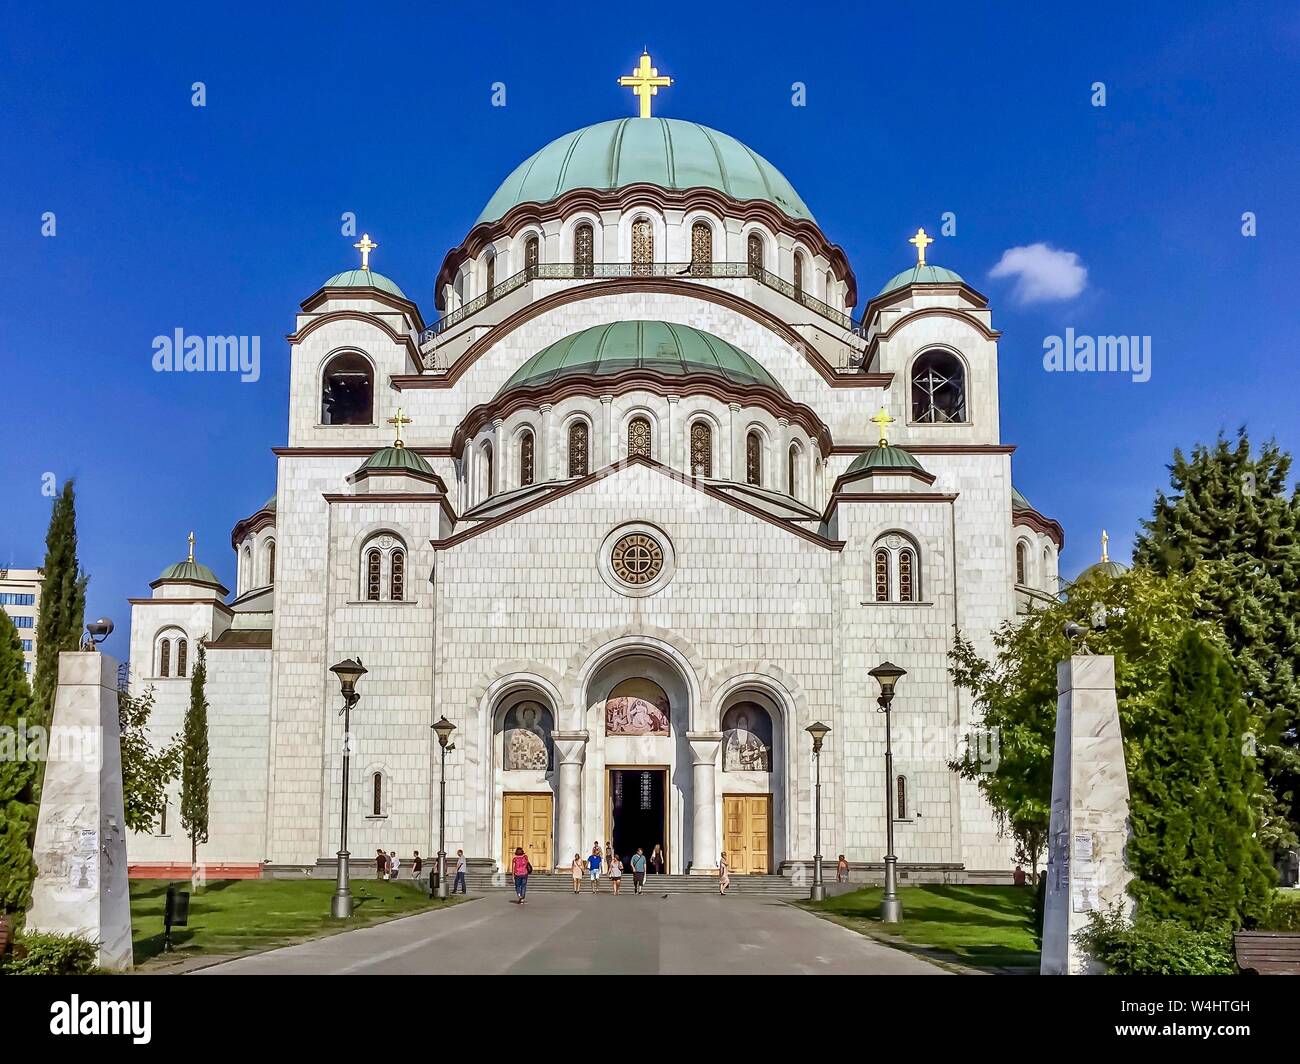 Vorderansicht der Kirche St. Sava (Hram Svetog Save auf Serbisch), einer der größten orthodoxen Kirchen der Welt, in Belgrad, Serbien.b Stockfoto